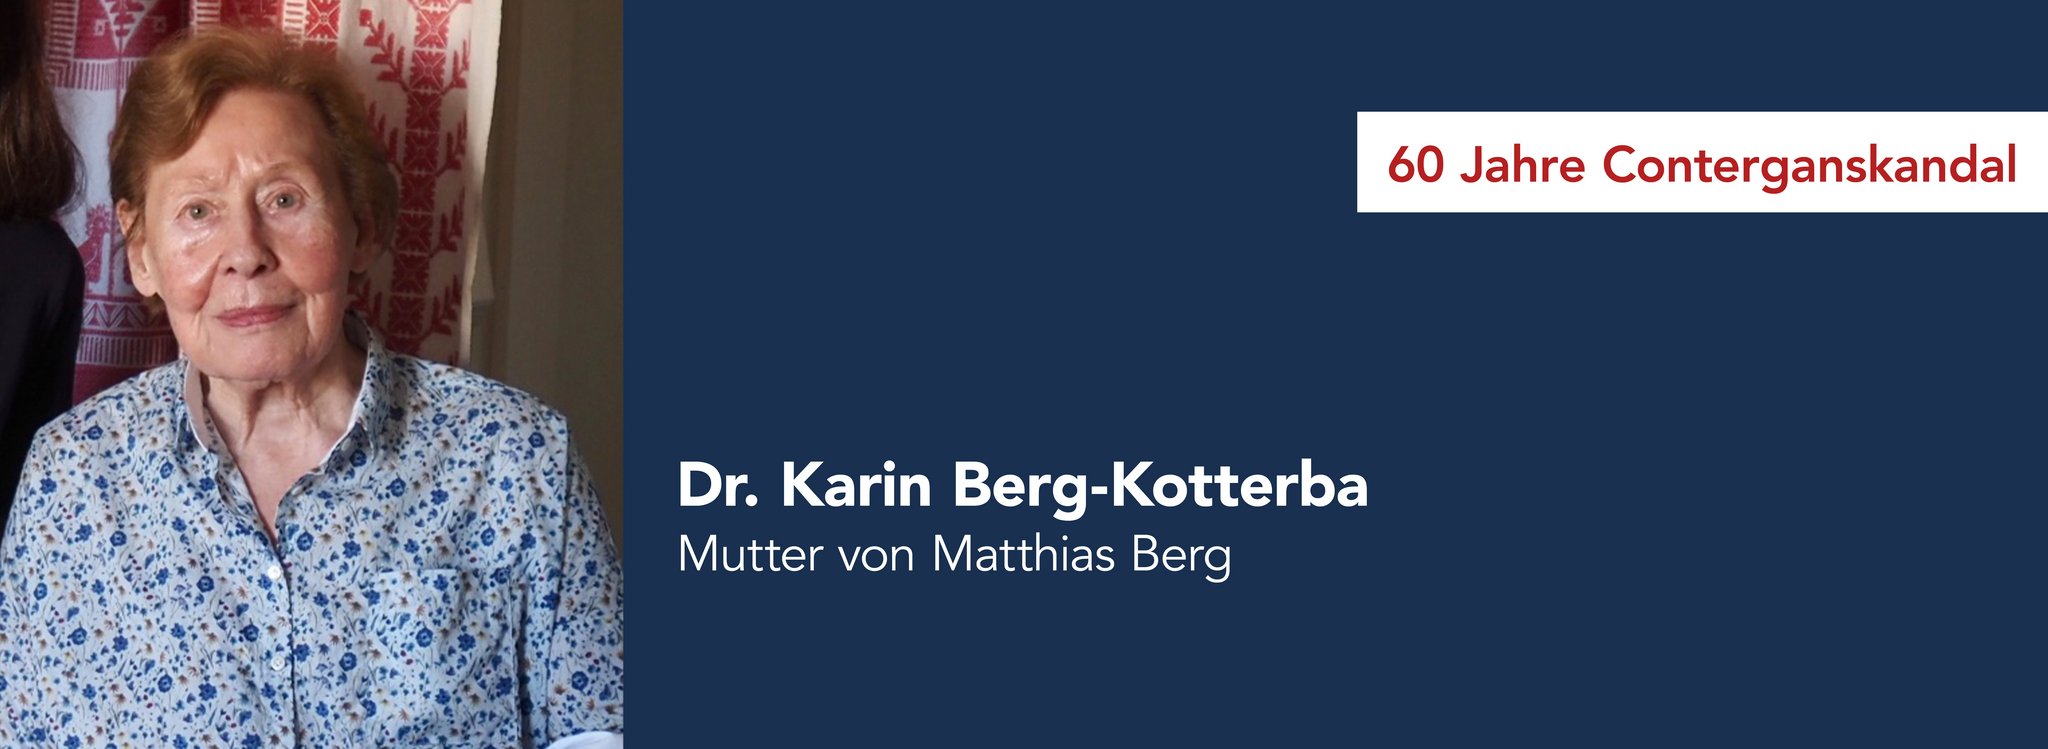 Das Bild zeigt Dr. Karin Berg-Kotterba Mutter von Matthias Berg